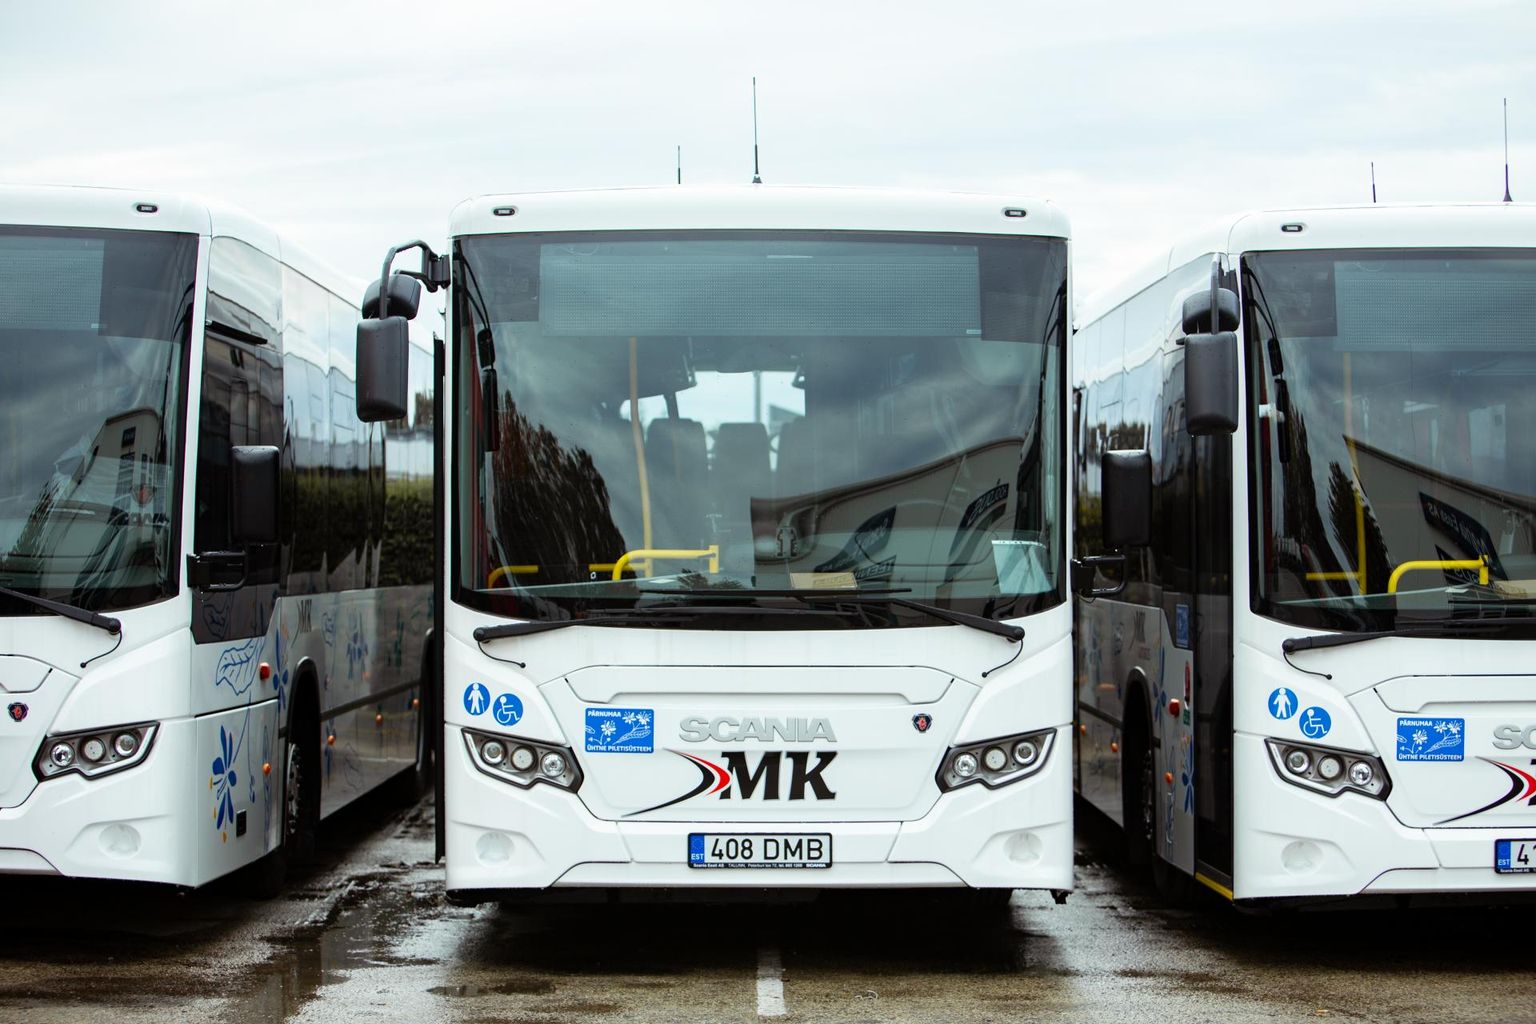 По словам Хардо Сульгера, логиста MK Autobuss, разрешение или запрет на поездку в автобусе с самокатом зависит от ситуации, то есть от того, сколько людей находится в автобусе.